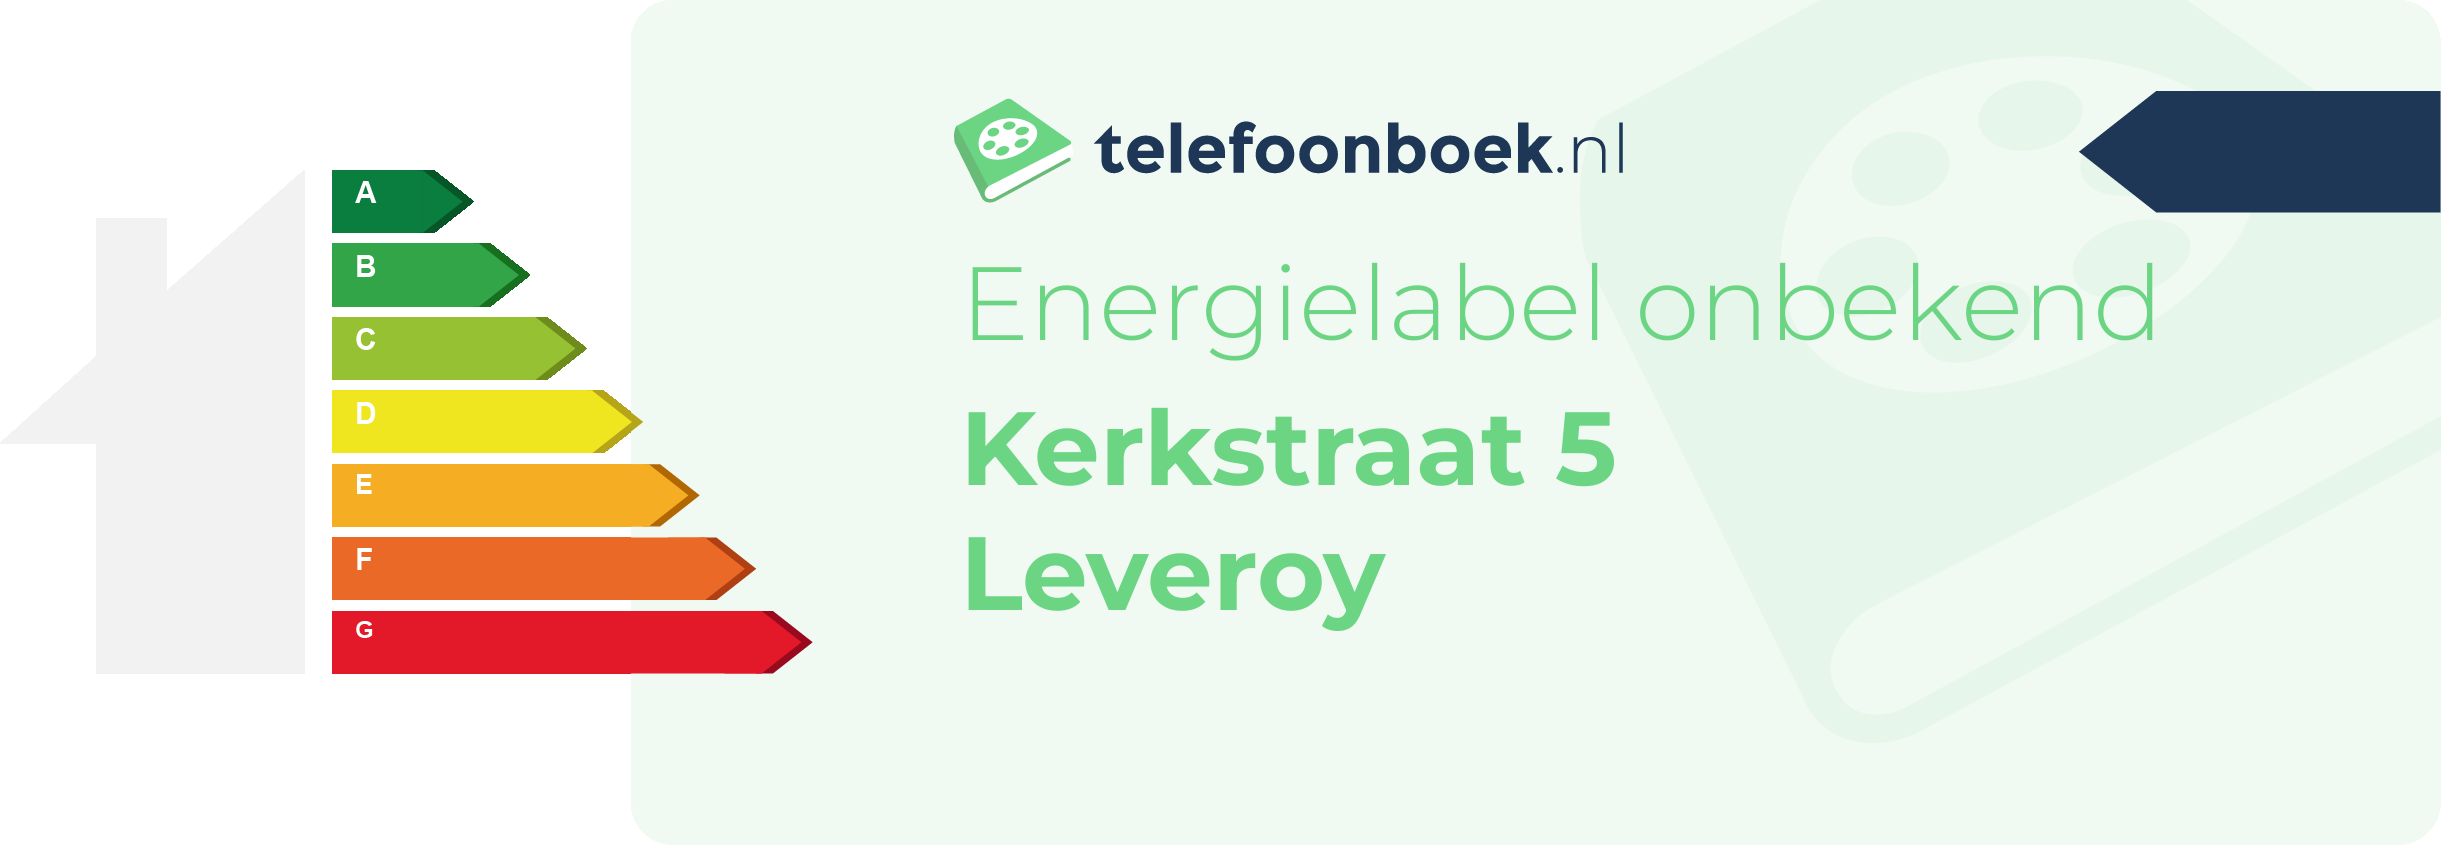 Energielabel Kerkstraat 5 Leveroy